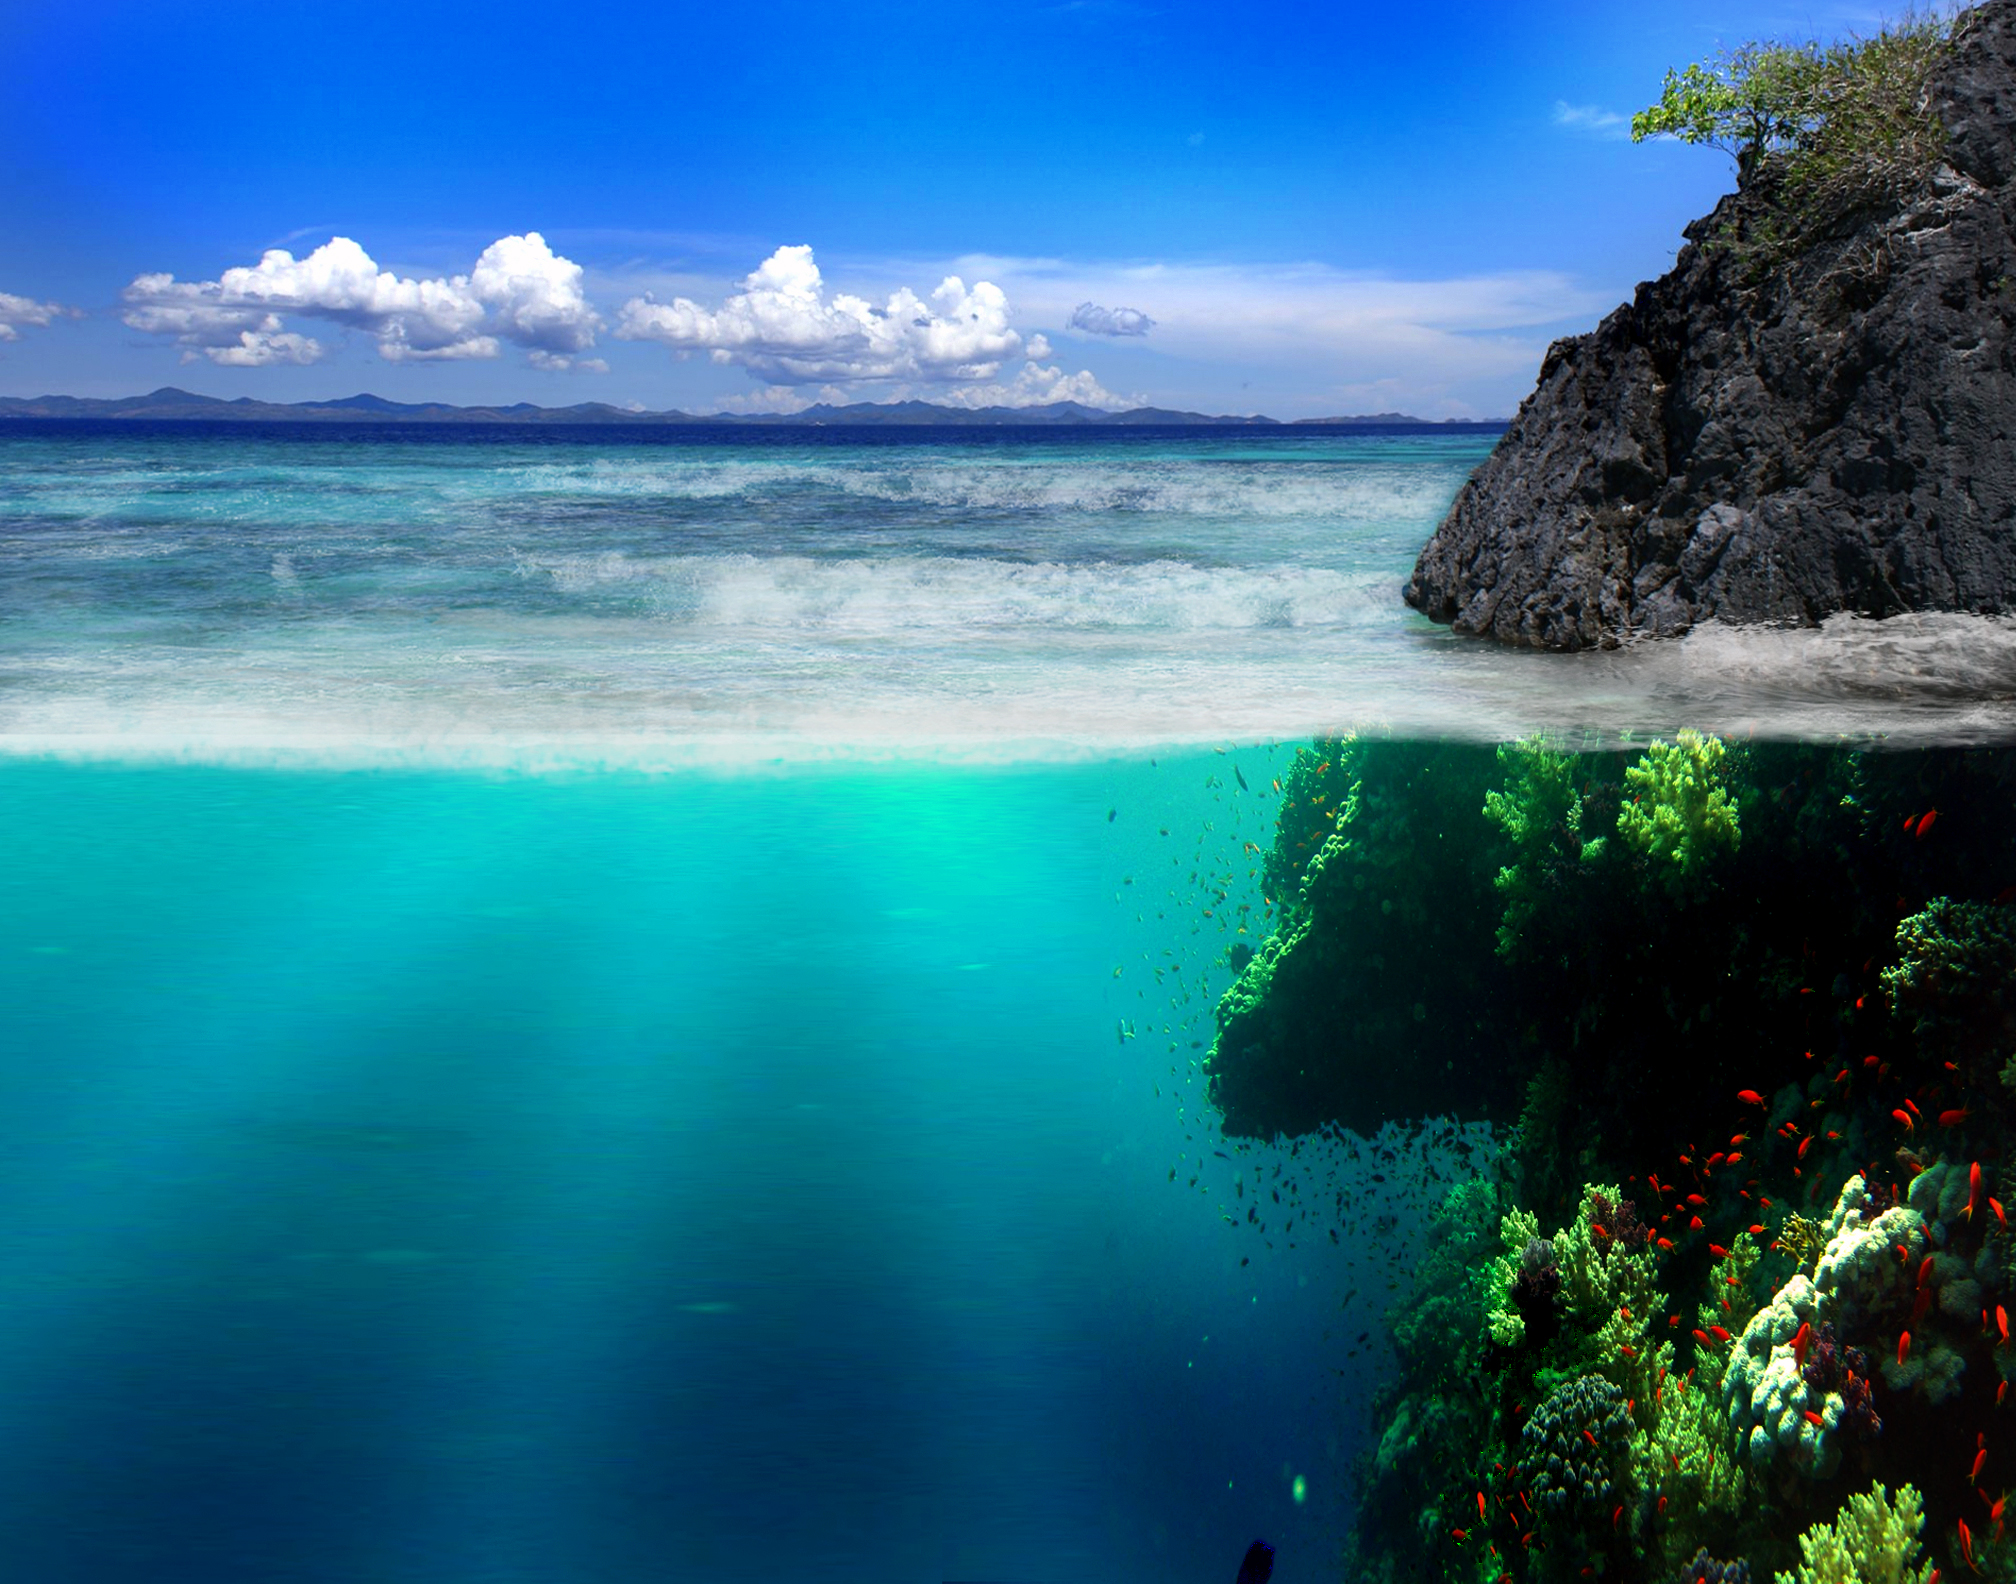 Hình nền dưới đại dương là một lựa chọn hoàn hảo cho những ai yêu biển và muốn tạo sự mới mẻ cho desktop của mình. Với những hình ảnh sinh động về đại dương, bạn có thể thay đổi không gian của mình mà không cần phải đến biển.